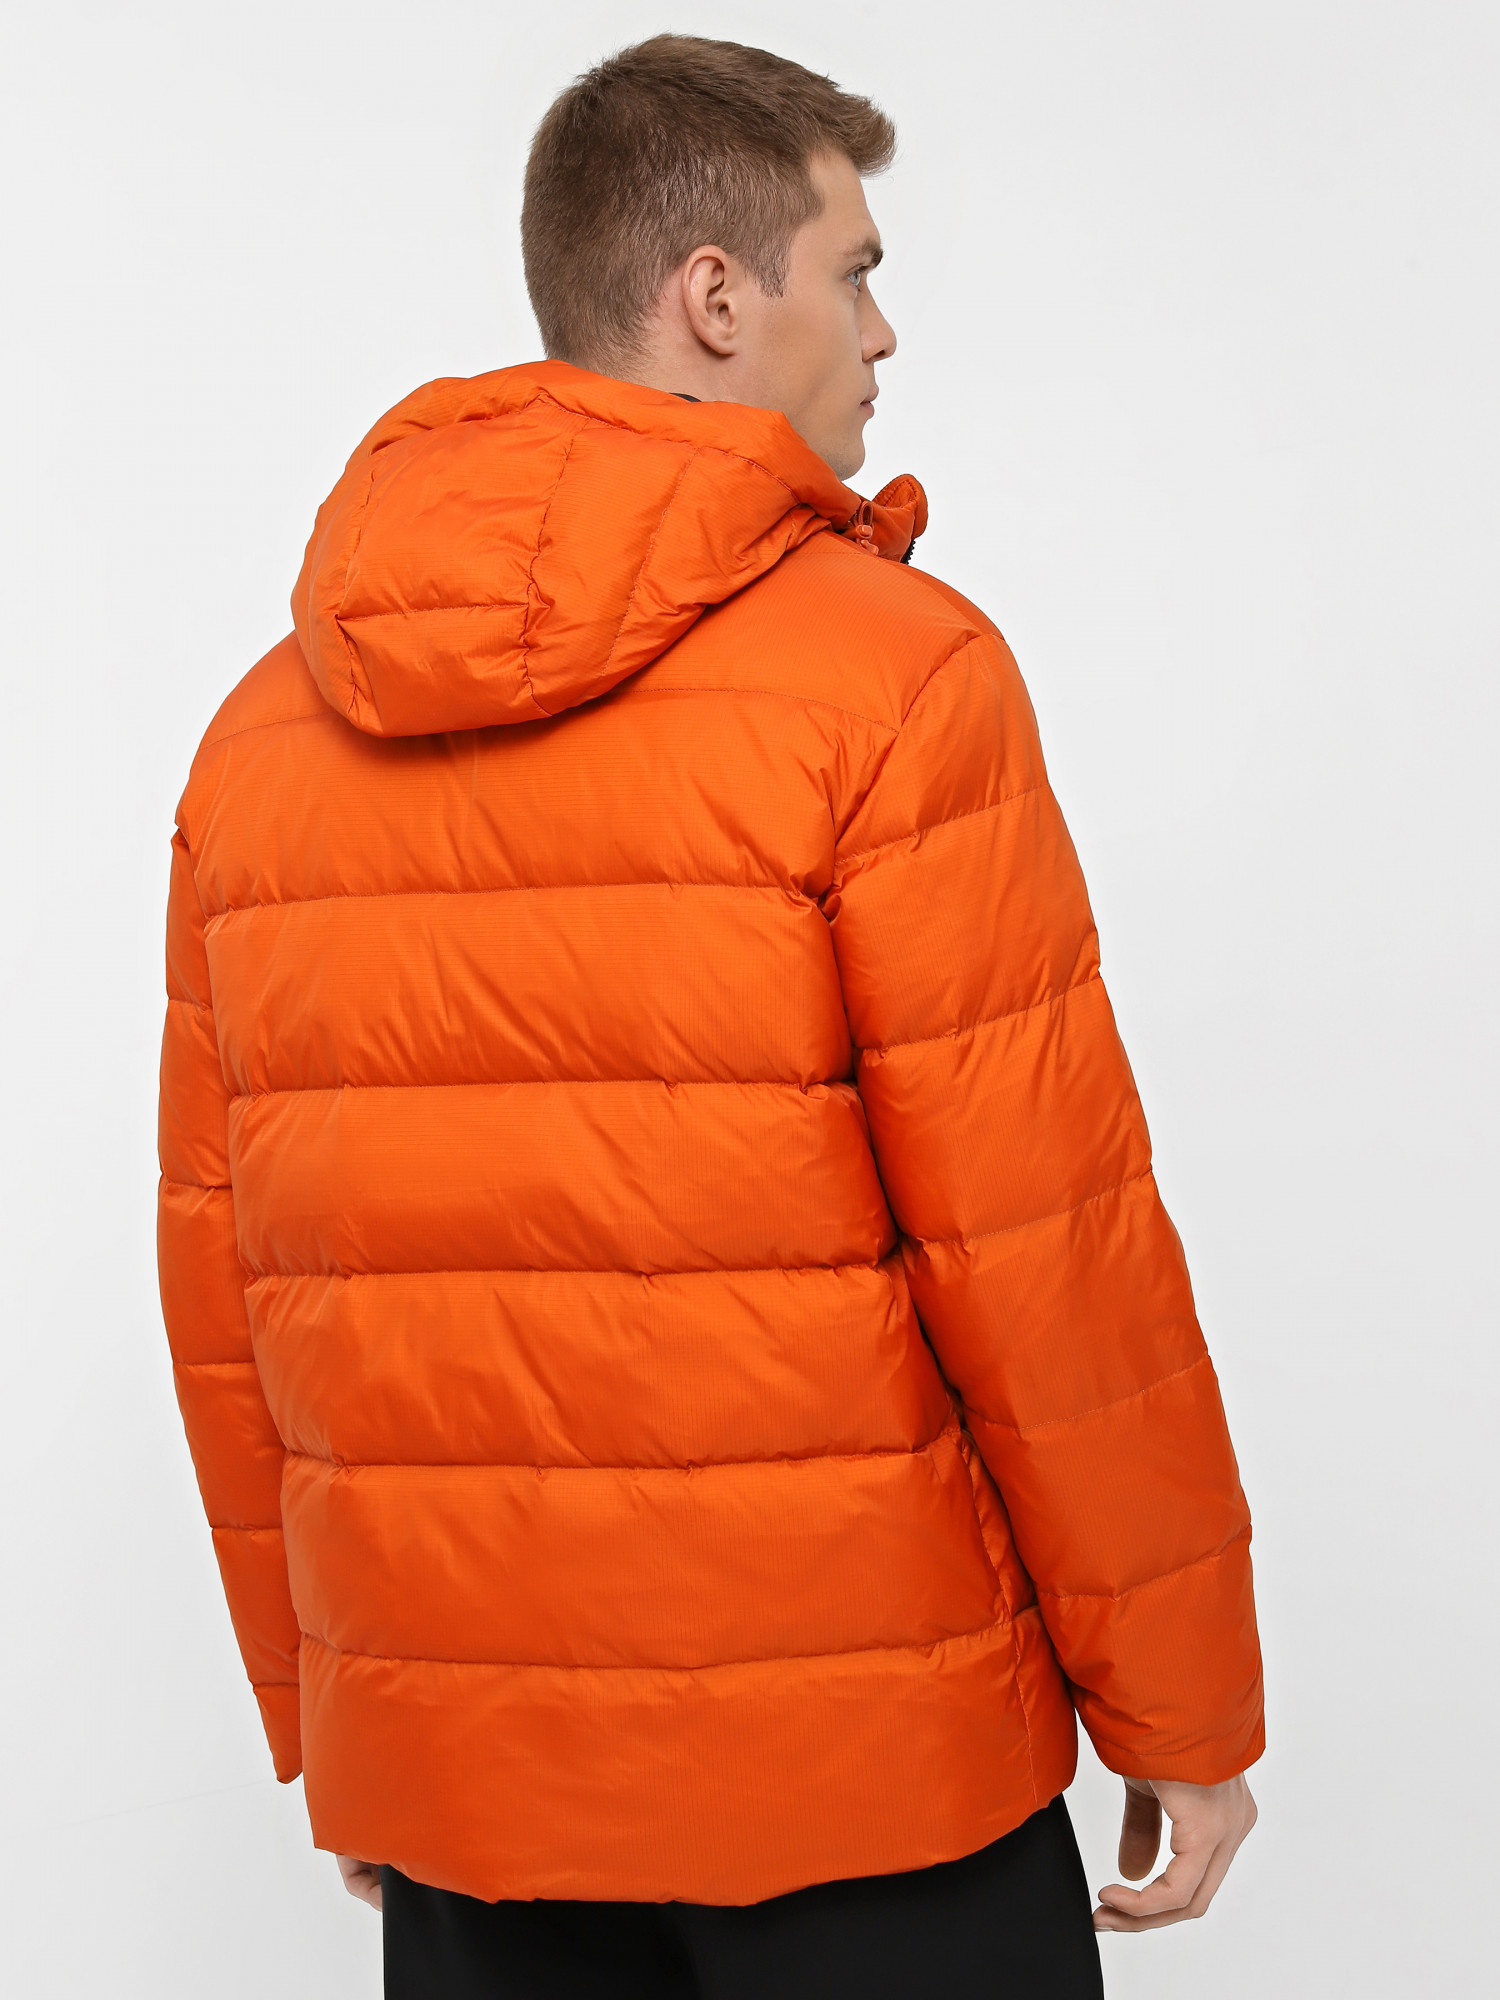 Куртка мужская Radder Oswald оранжевая 502402-840 изображение 3